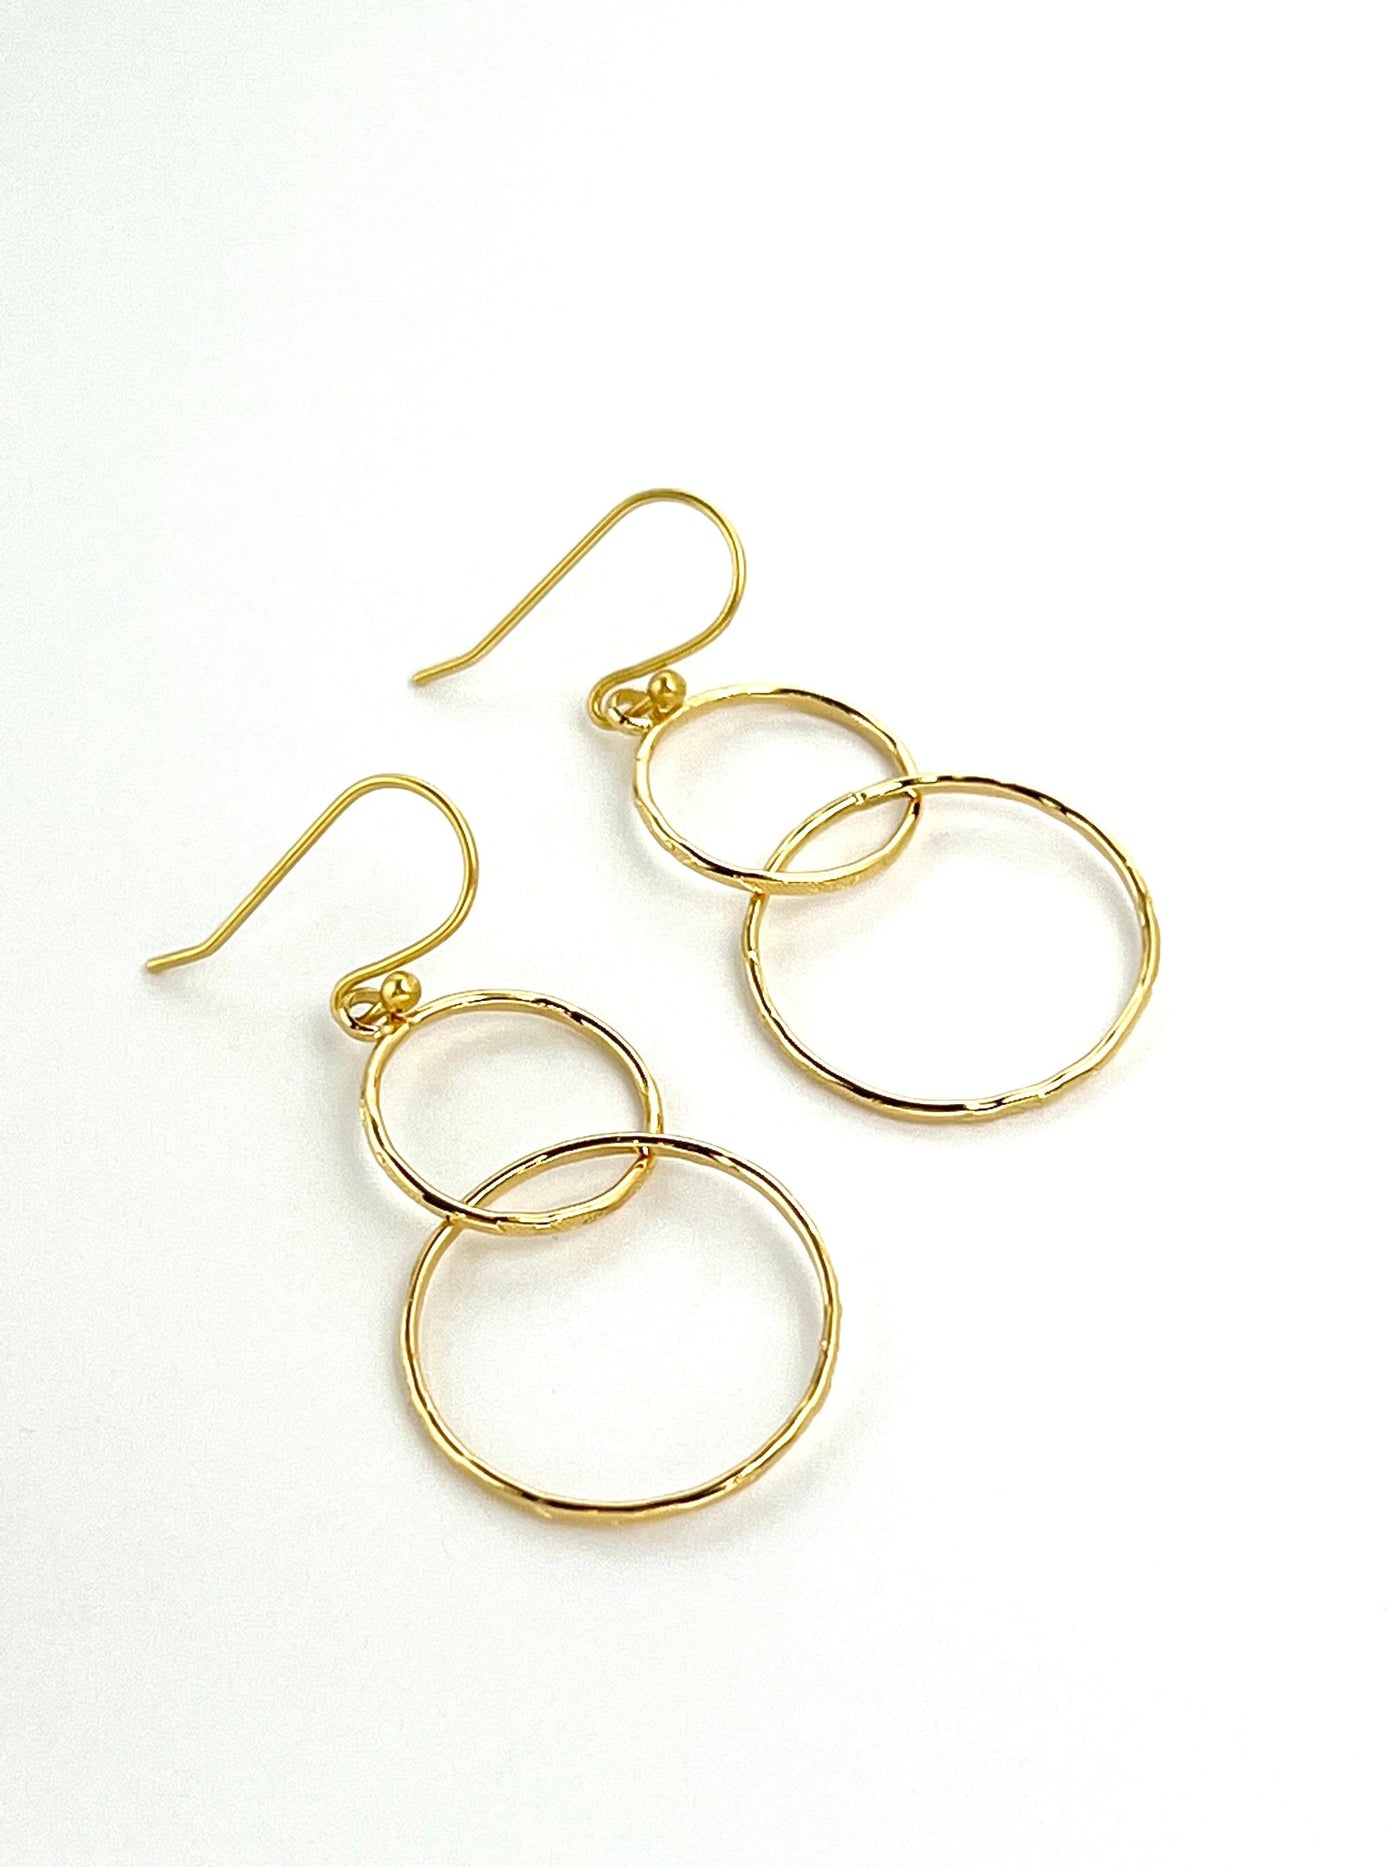 Double Hoop Gold Dangle Earrings